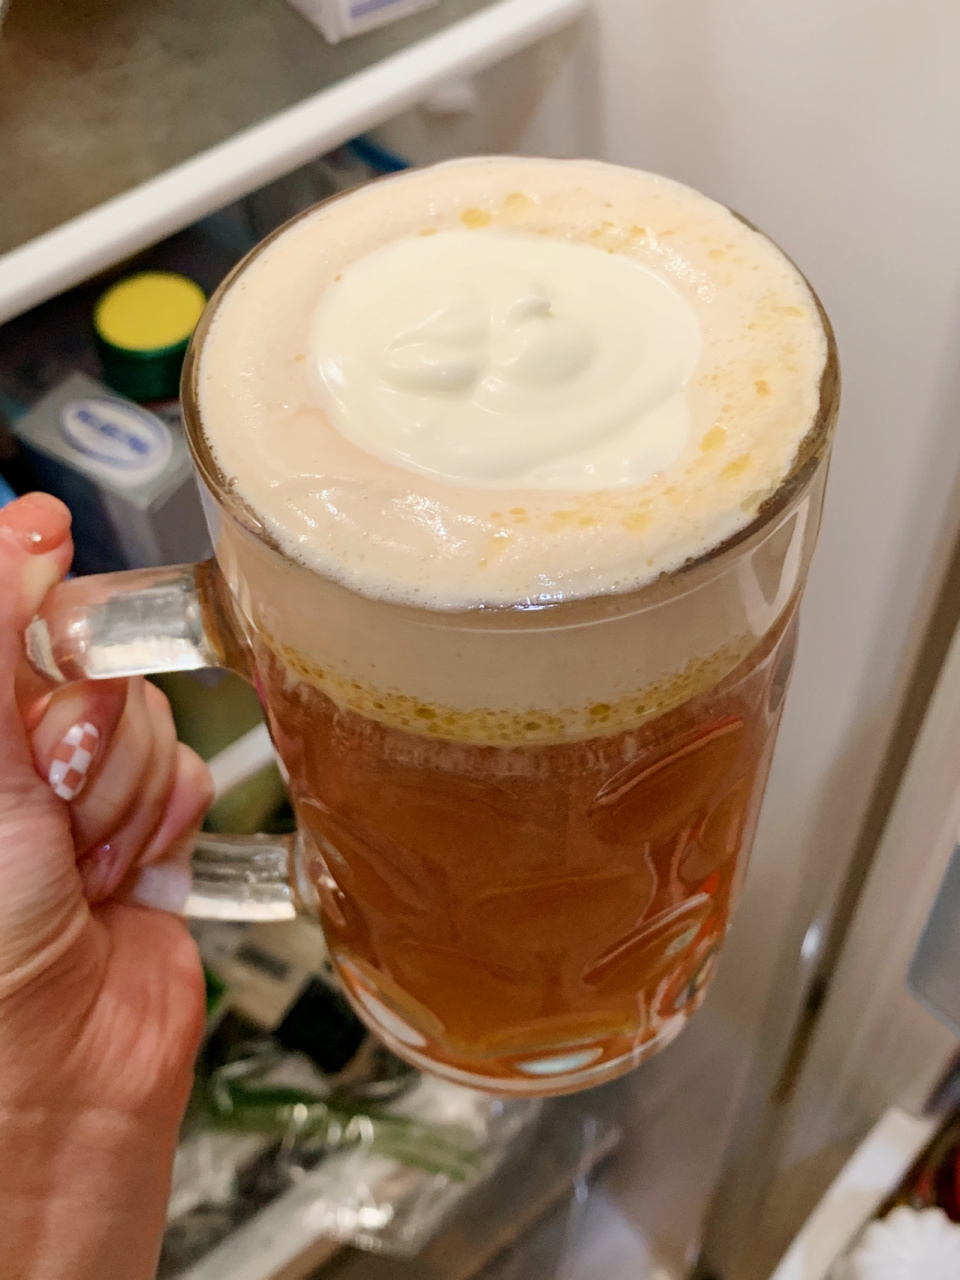 大阪环球影城黄油啤酒图片